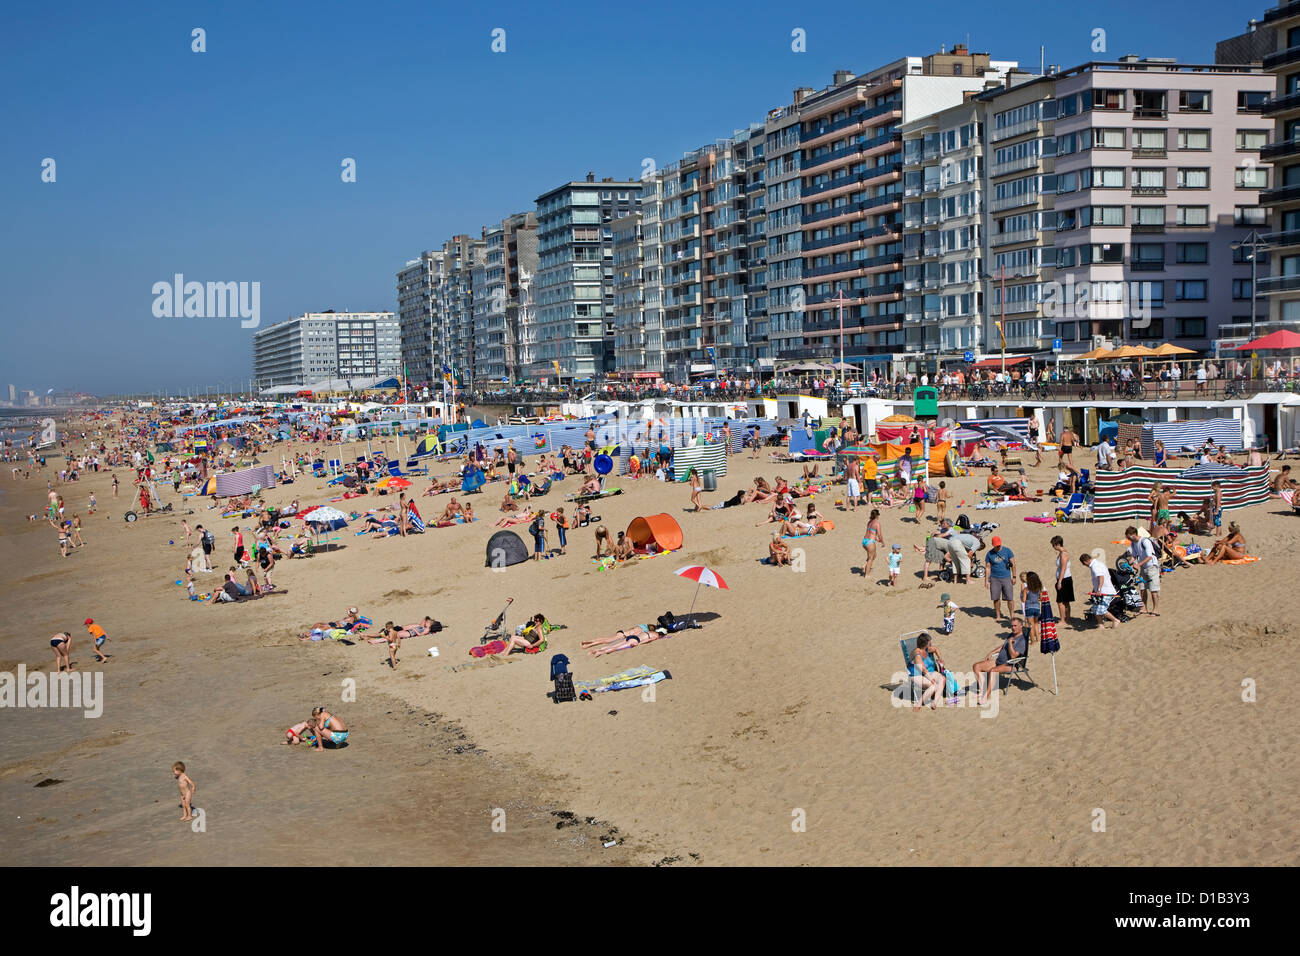 Bañistas en verano tomando el sol detrás de pantallas y cortinas rompevientos en la playa en la costa del Mar del Norte en la ciudad balnearia belga, Bélgica Foto de stock